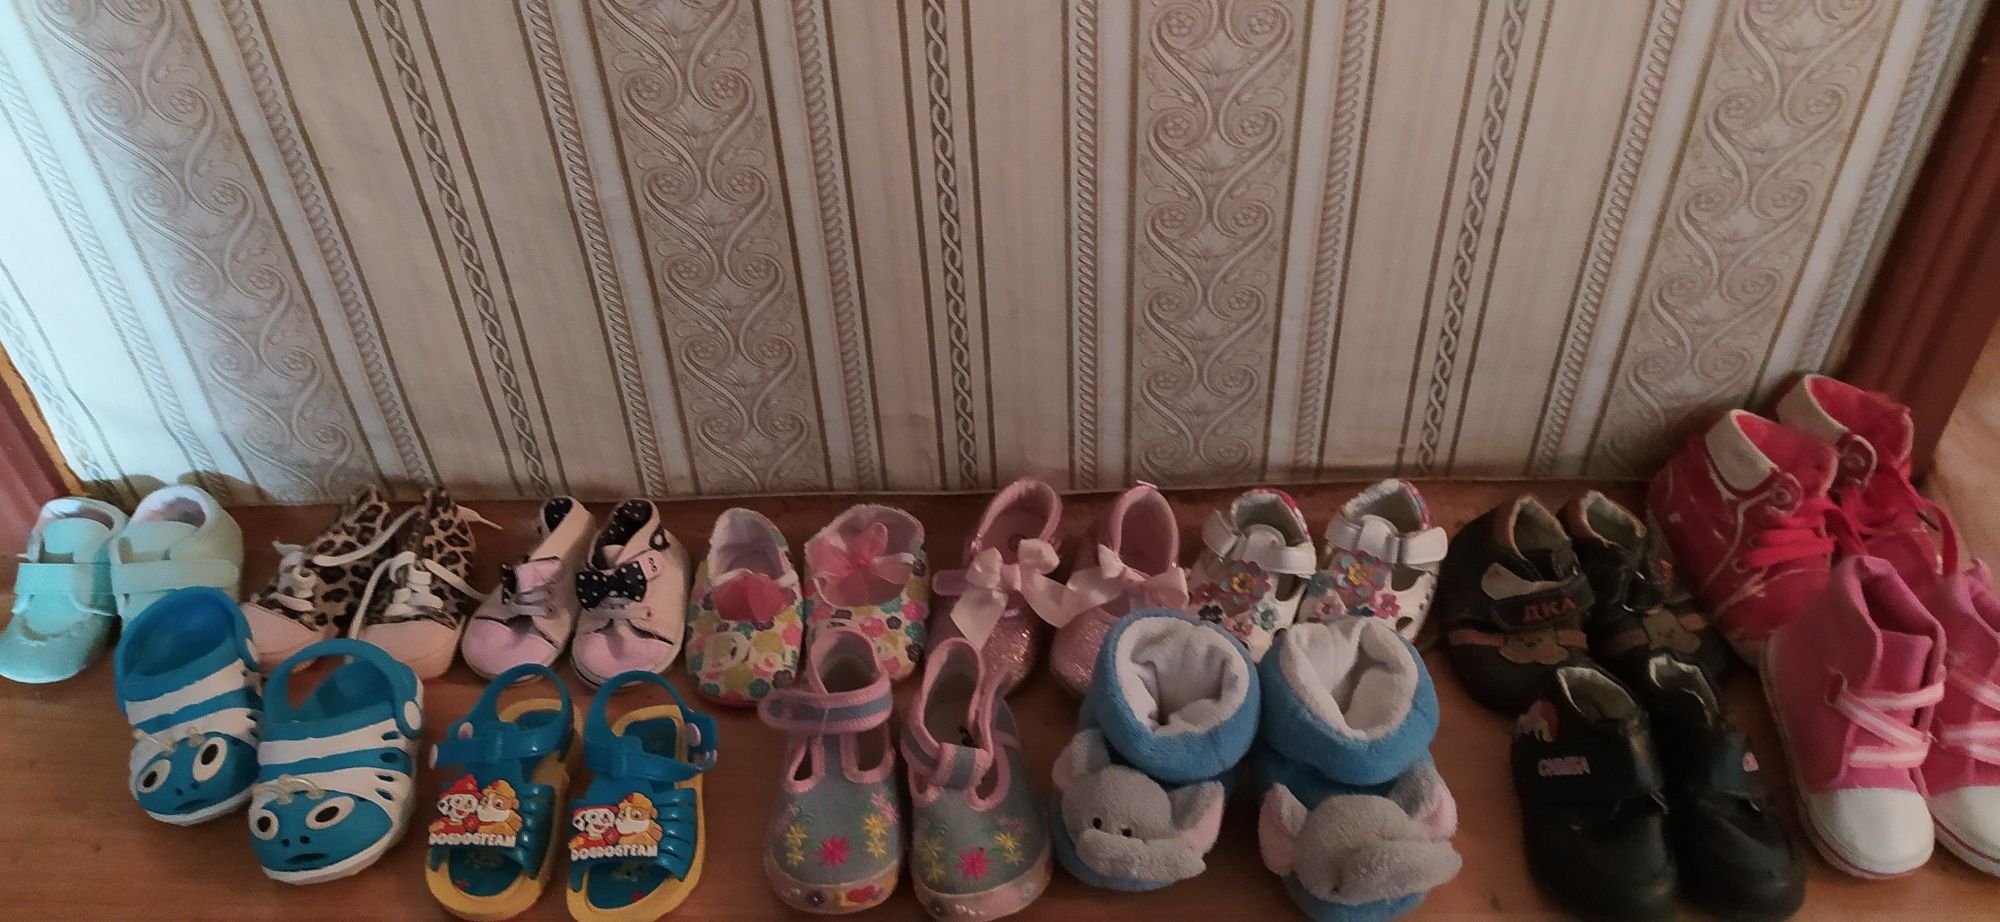 Продам обувь детскую по 200 тенге за одну пару, размеры разные